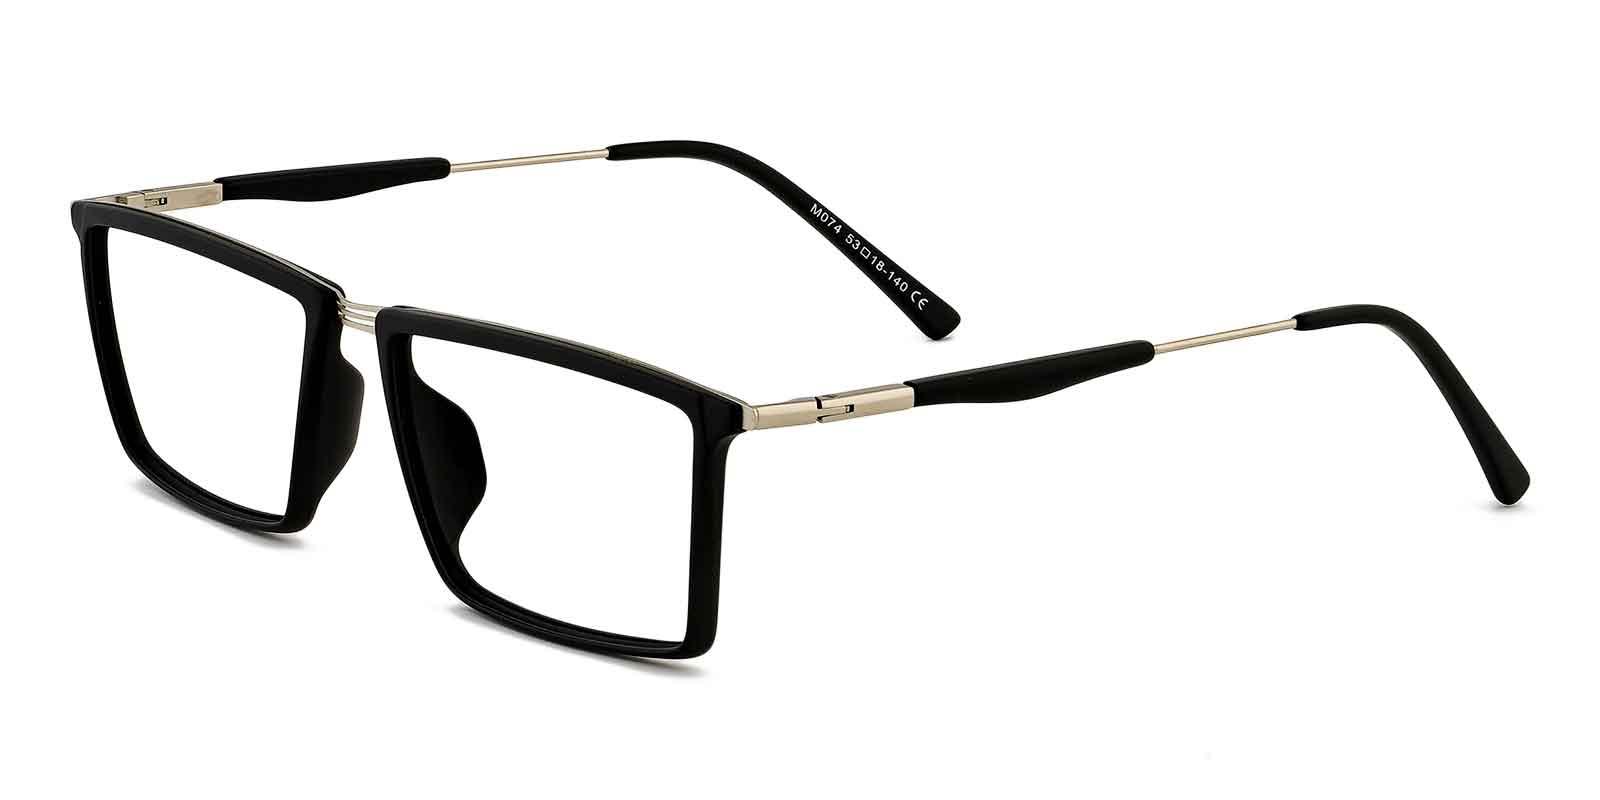 Rhode Black TR Eyeglasses , UniversalBridgeFit Frames from ABBE Glasses